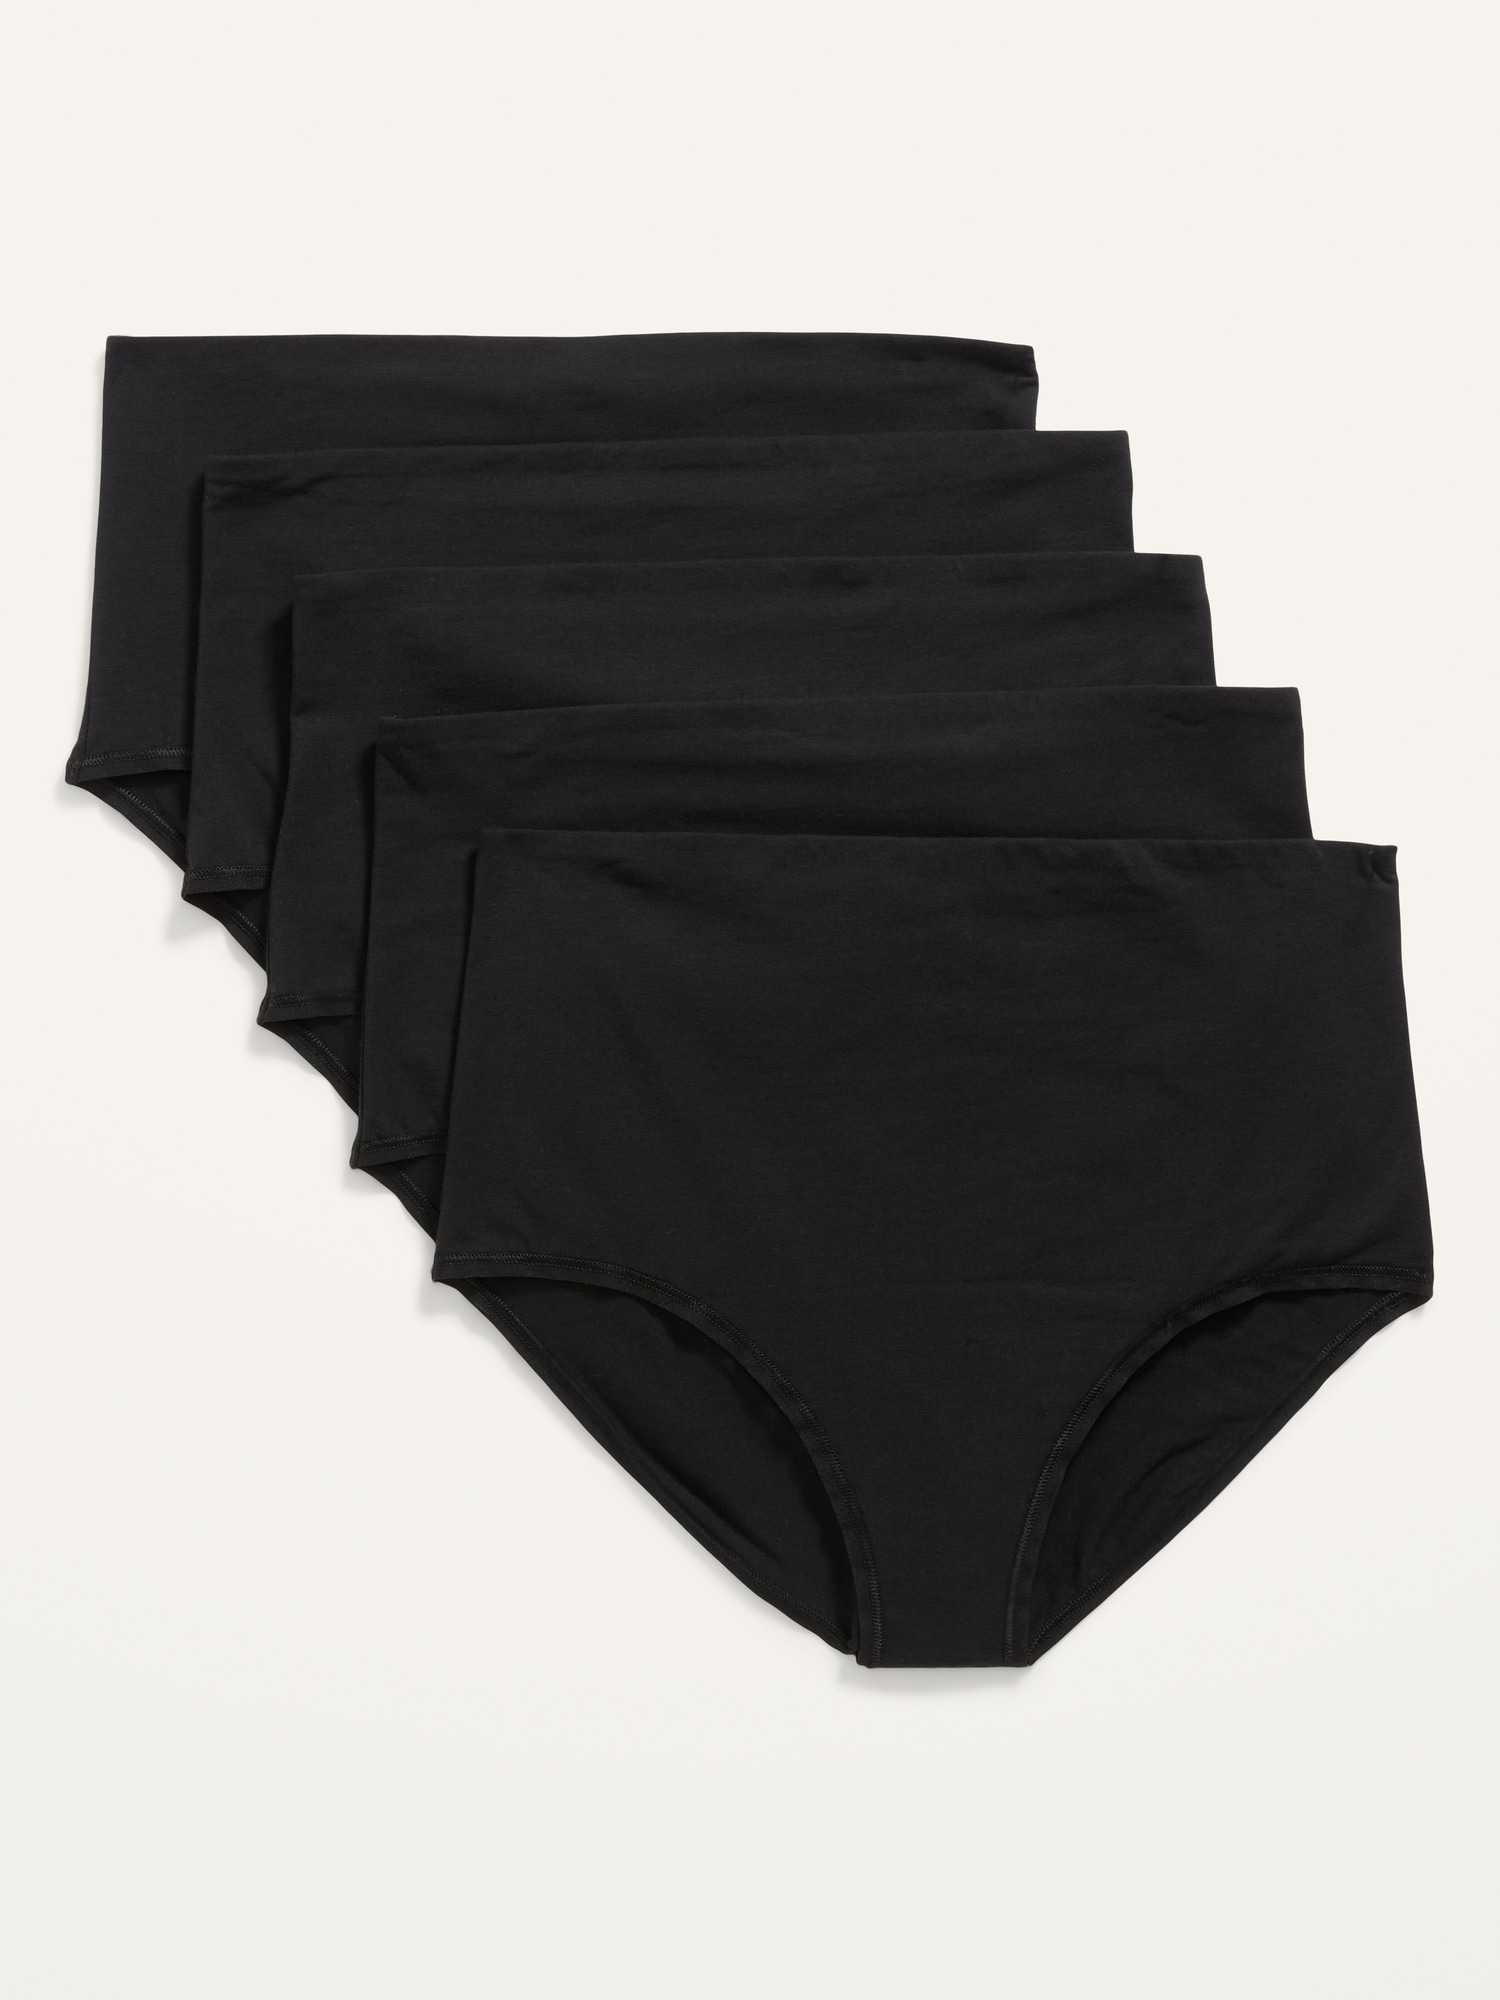  Angelhood Cotton Maternity Underwear Under Bump, Healthy Pregnancy  Panties Postpartum Underwear 6 Pack